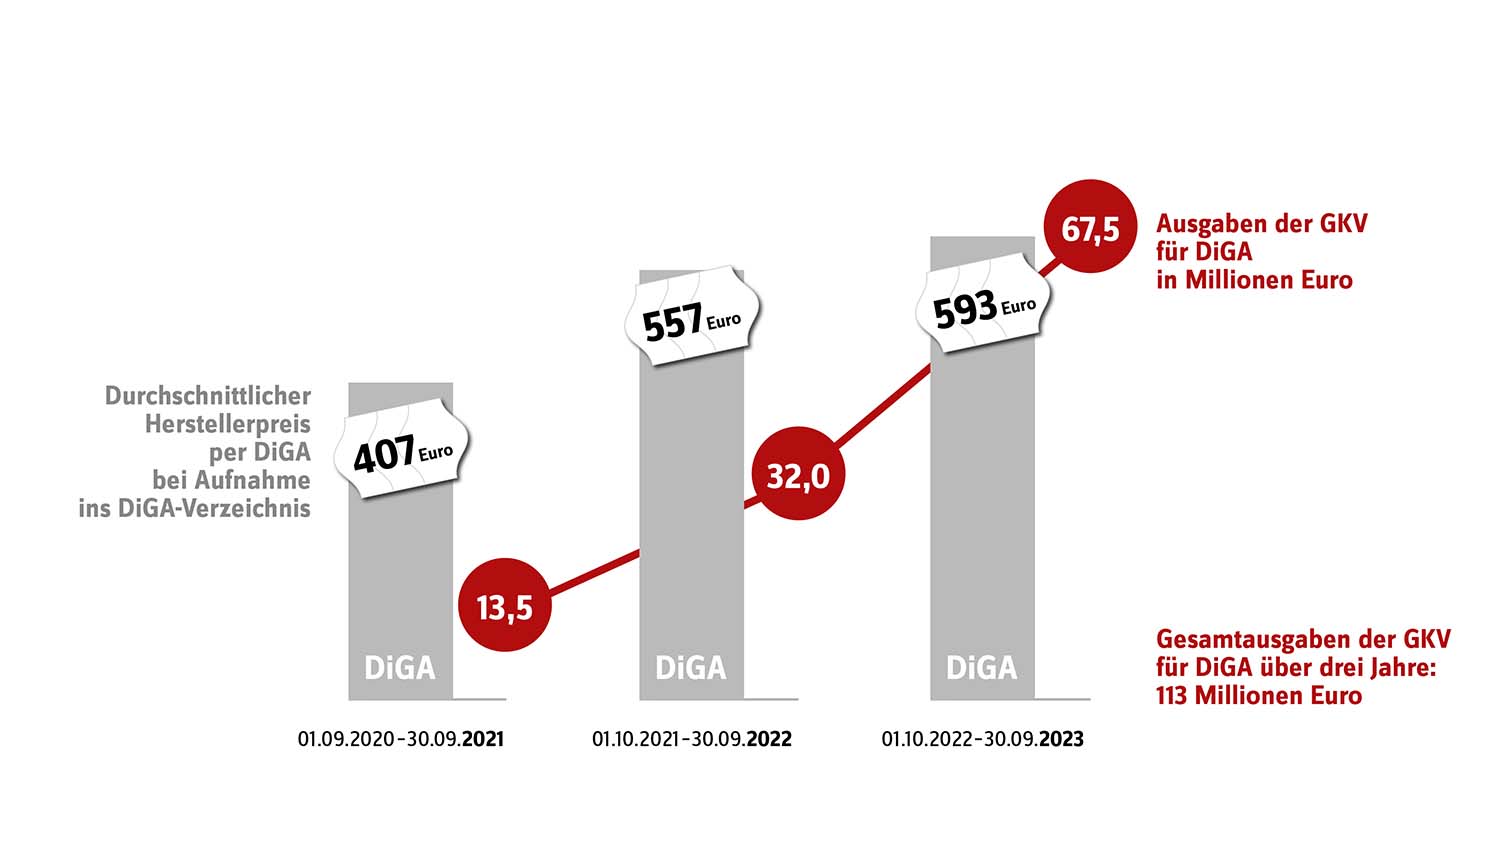 Im Vergleich zum Vorjahrszeitraum haben sich Inanspruchnahme und Ausgaben für Digitale Gesundheitsanwendungen (DiGA) von 10/2022 bis 9/2023 mehr als verdoppelt. Gleichzeitig werden die DiGA nicht nur teurer, immer häufiger steht auch der Nutzennachweis aus, kritisiert der GKV-Spitzenverband und fordert Änderungen.